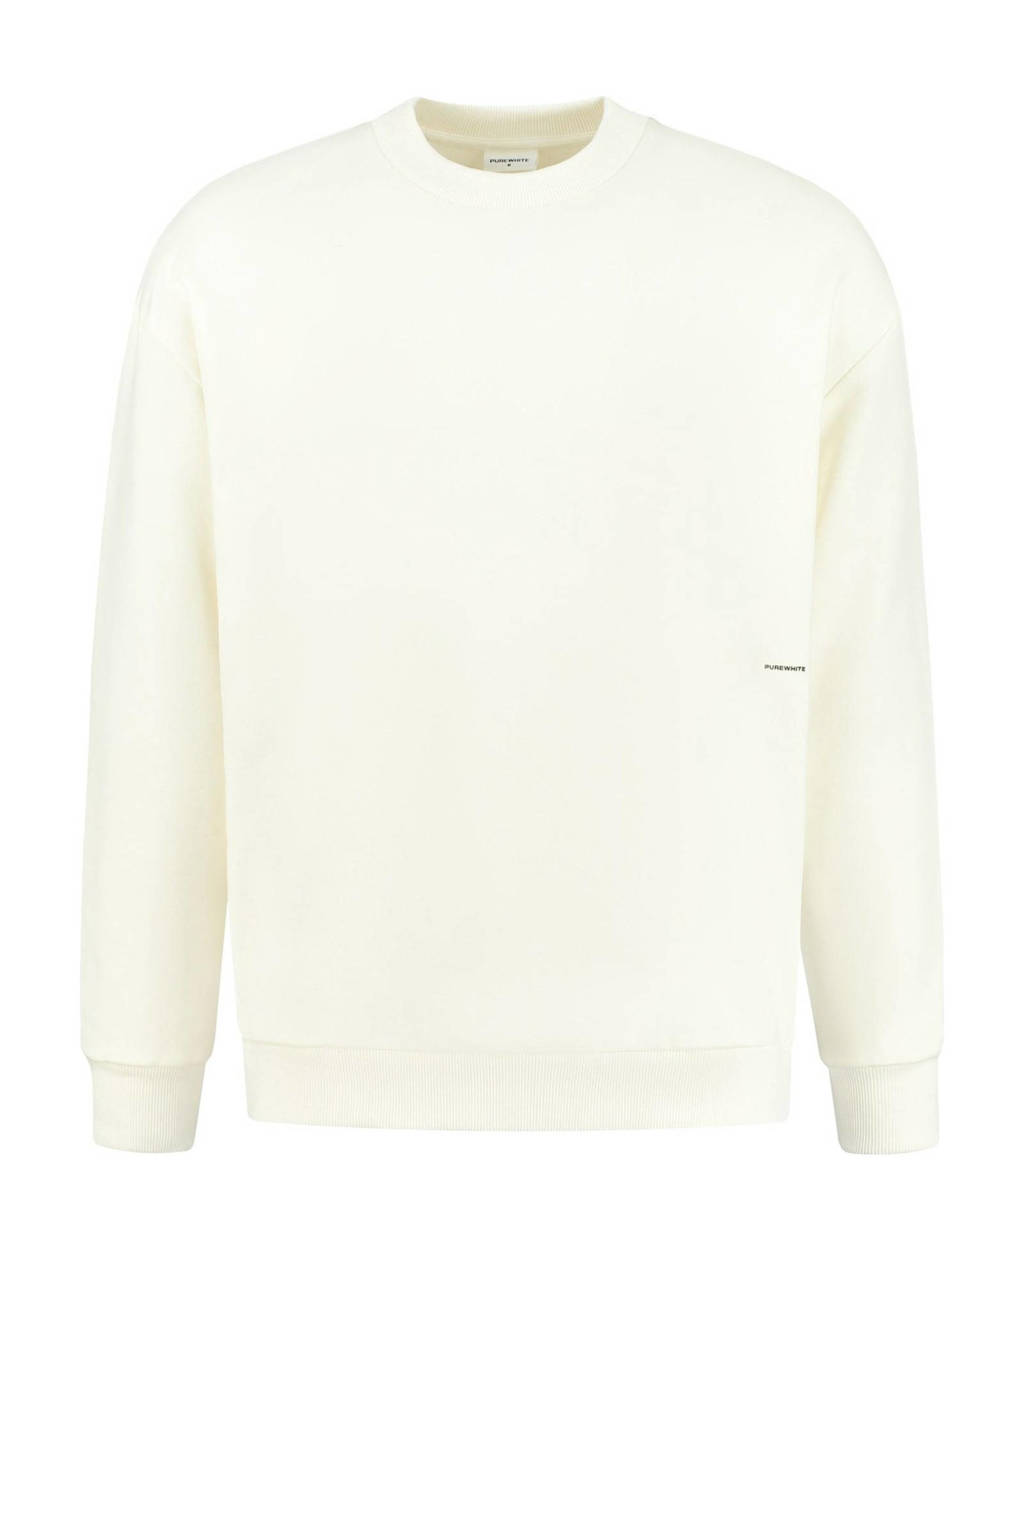 Purewhite sweater off white